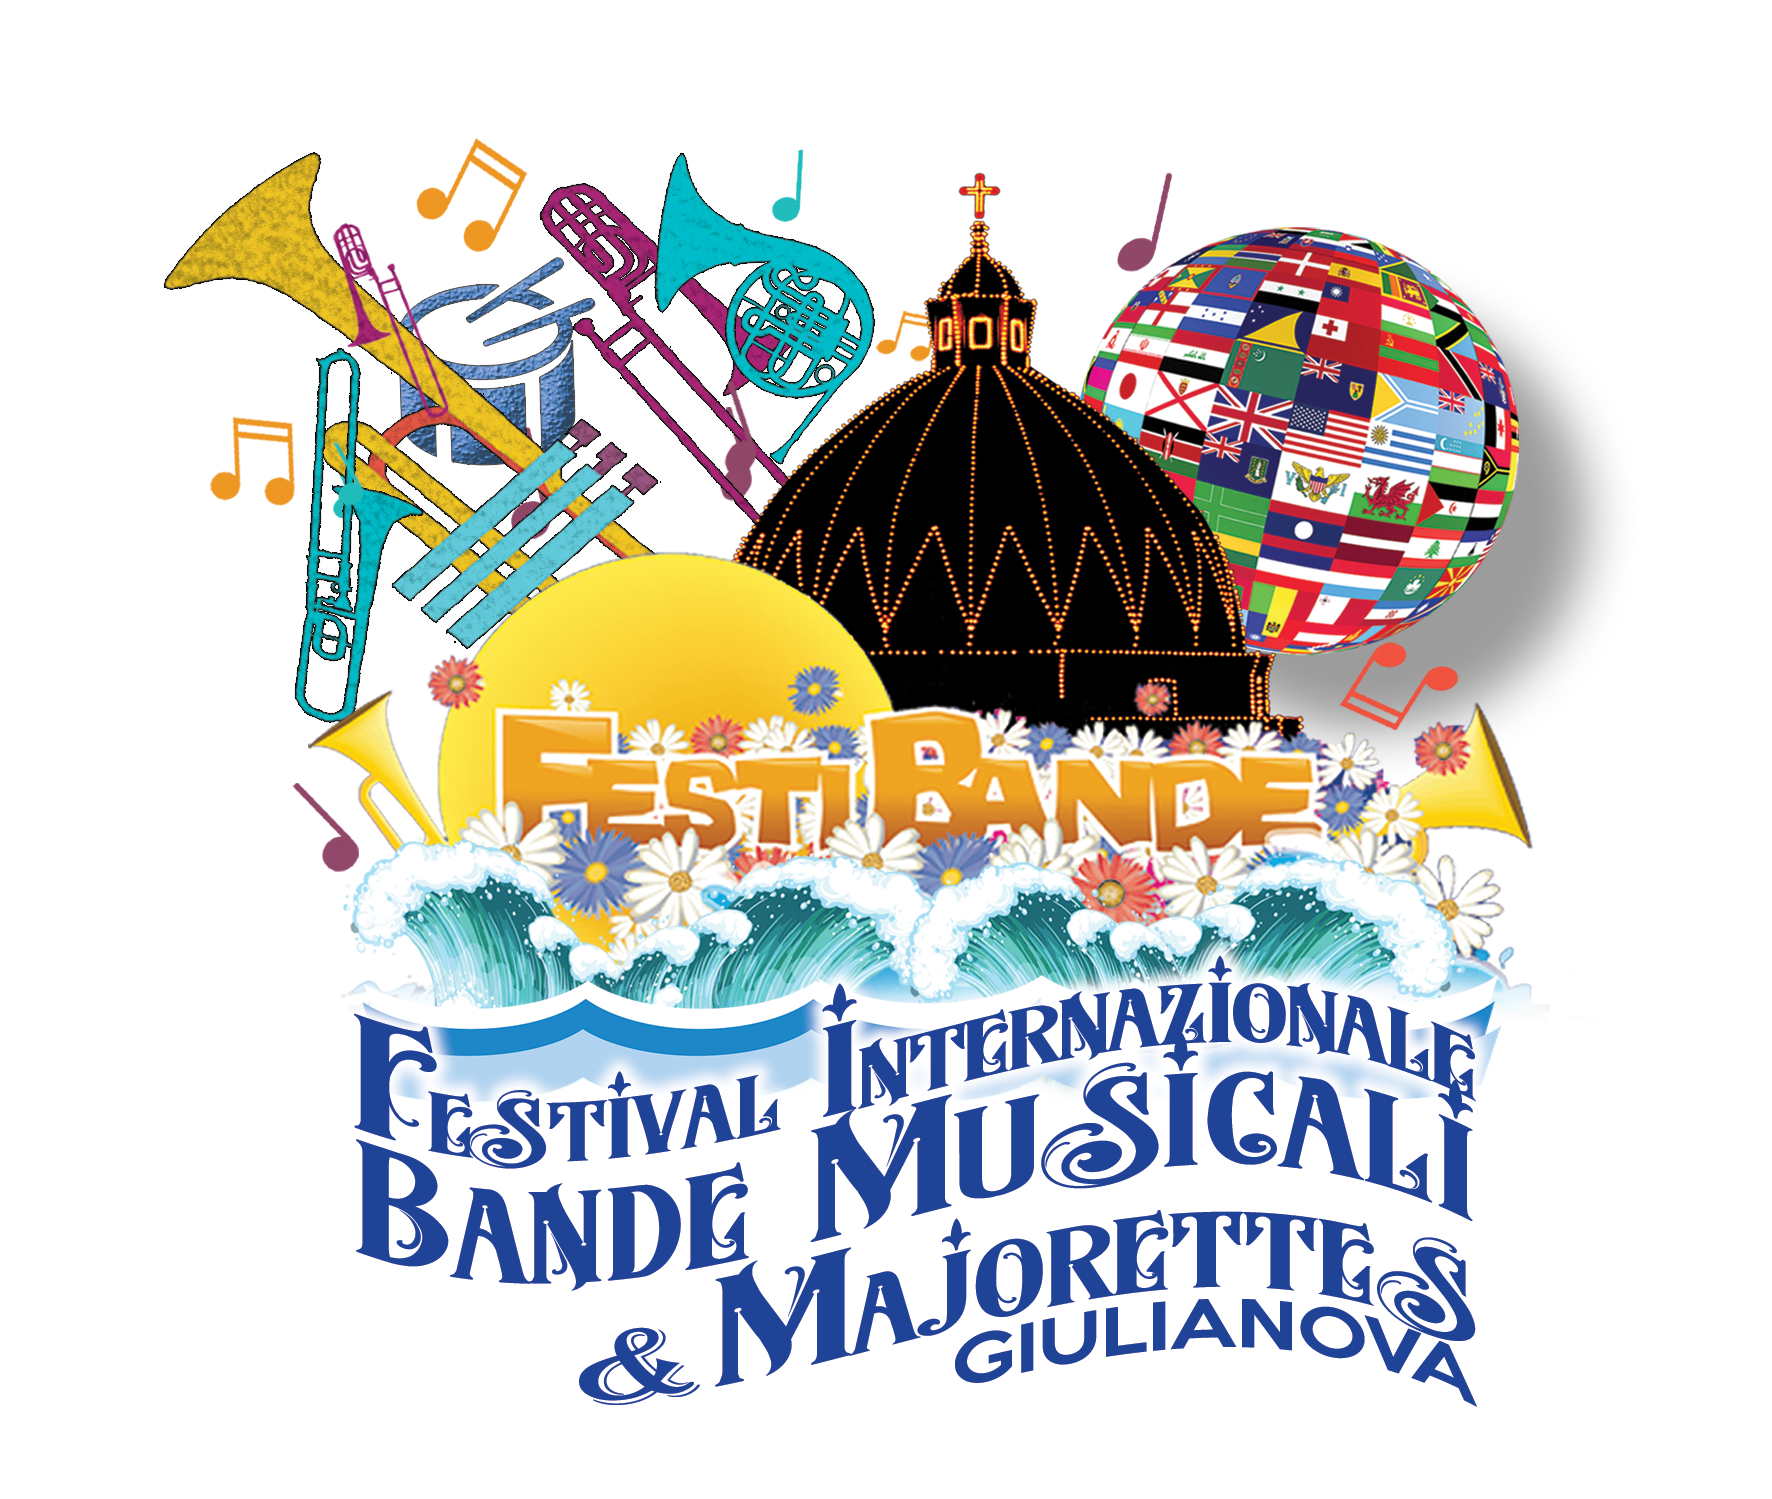 Festival Internazionale Bande Musicali - Giulianova